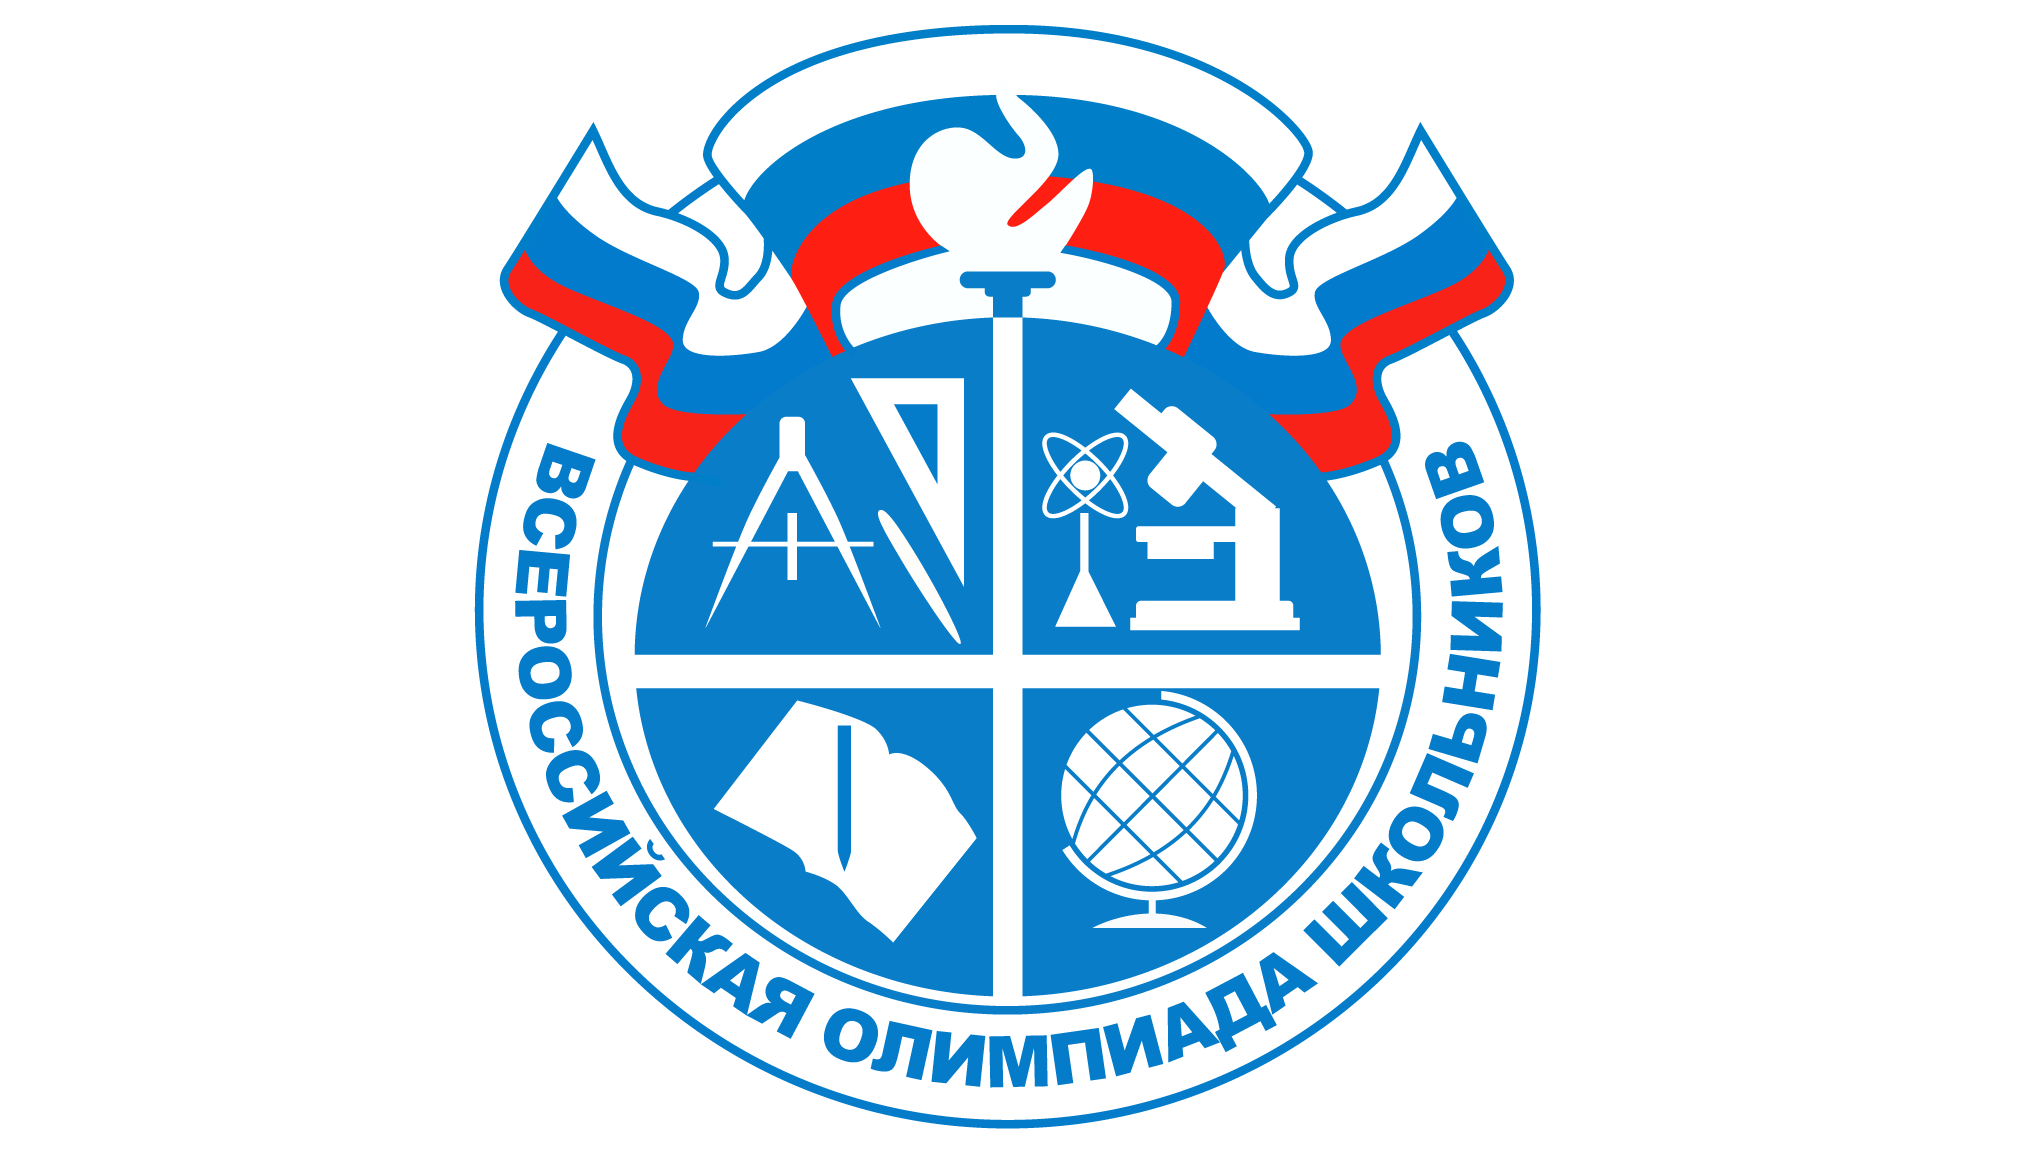 Всероссийская олимпиада школьников (федеральный и региональный уровень).